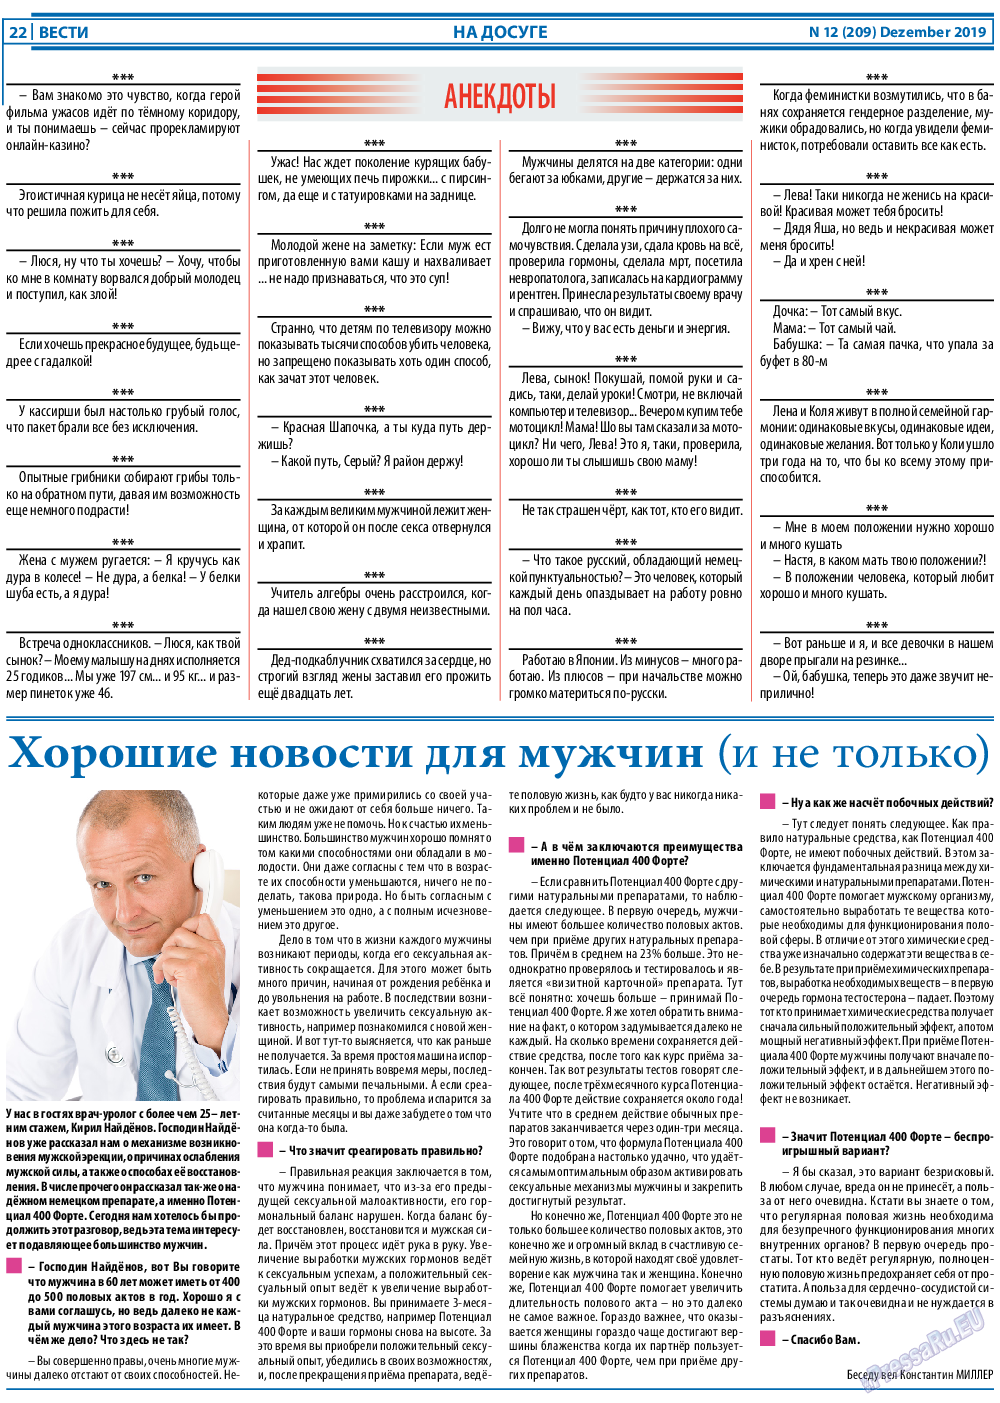 Вести, газета. 2019 №12 стр.22